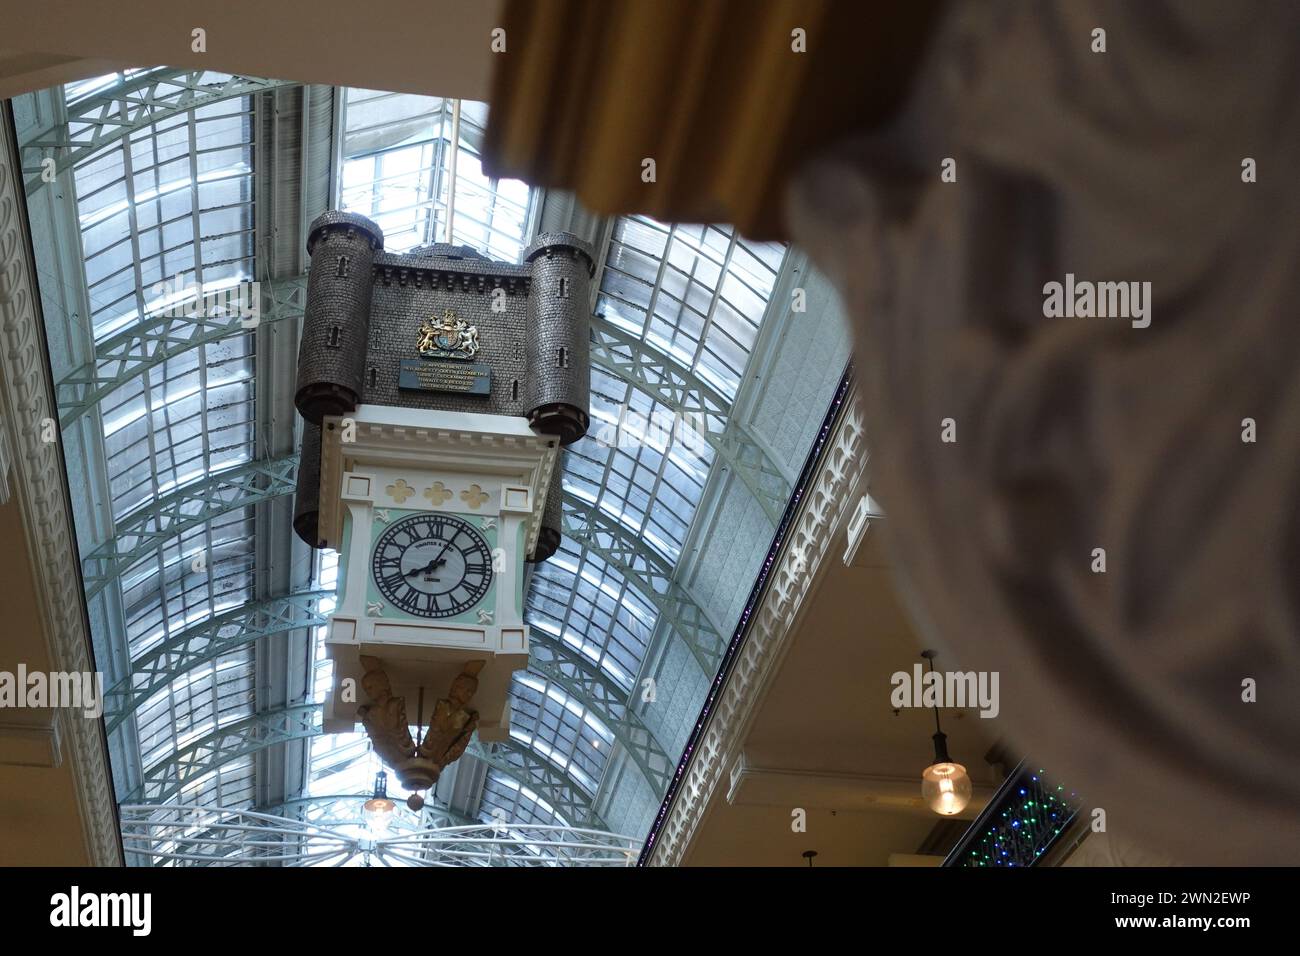 Die Royal Clock im Queen Victoria Building (QVB) in Sydney, Australien, ist ein bemerkenswertes Merkmal des historischen Wahrzeichens. Das komplizierte Design und cr Stockfoto